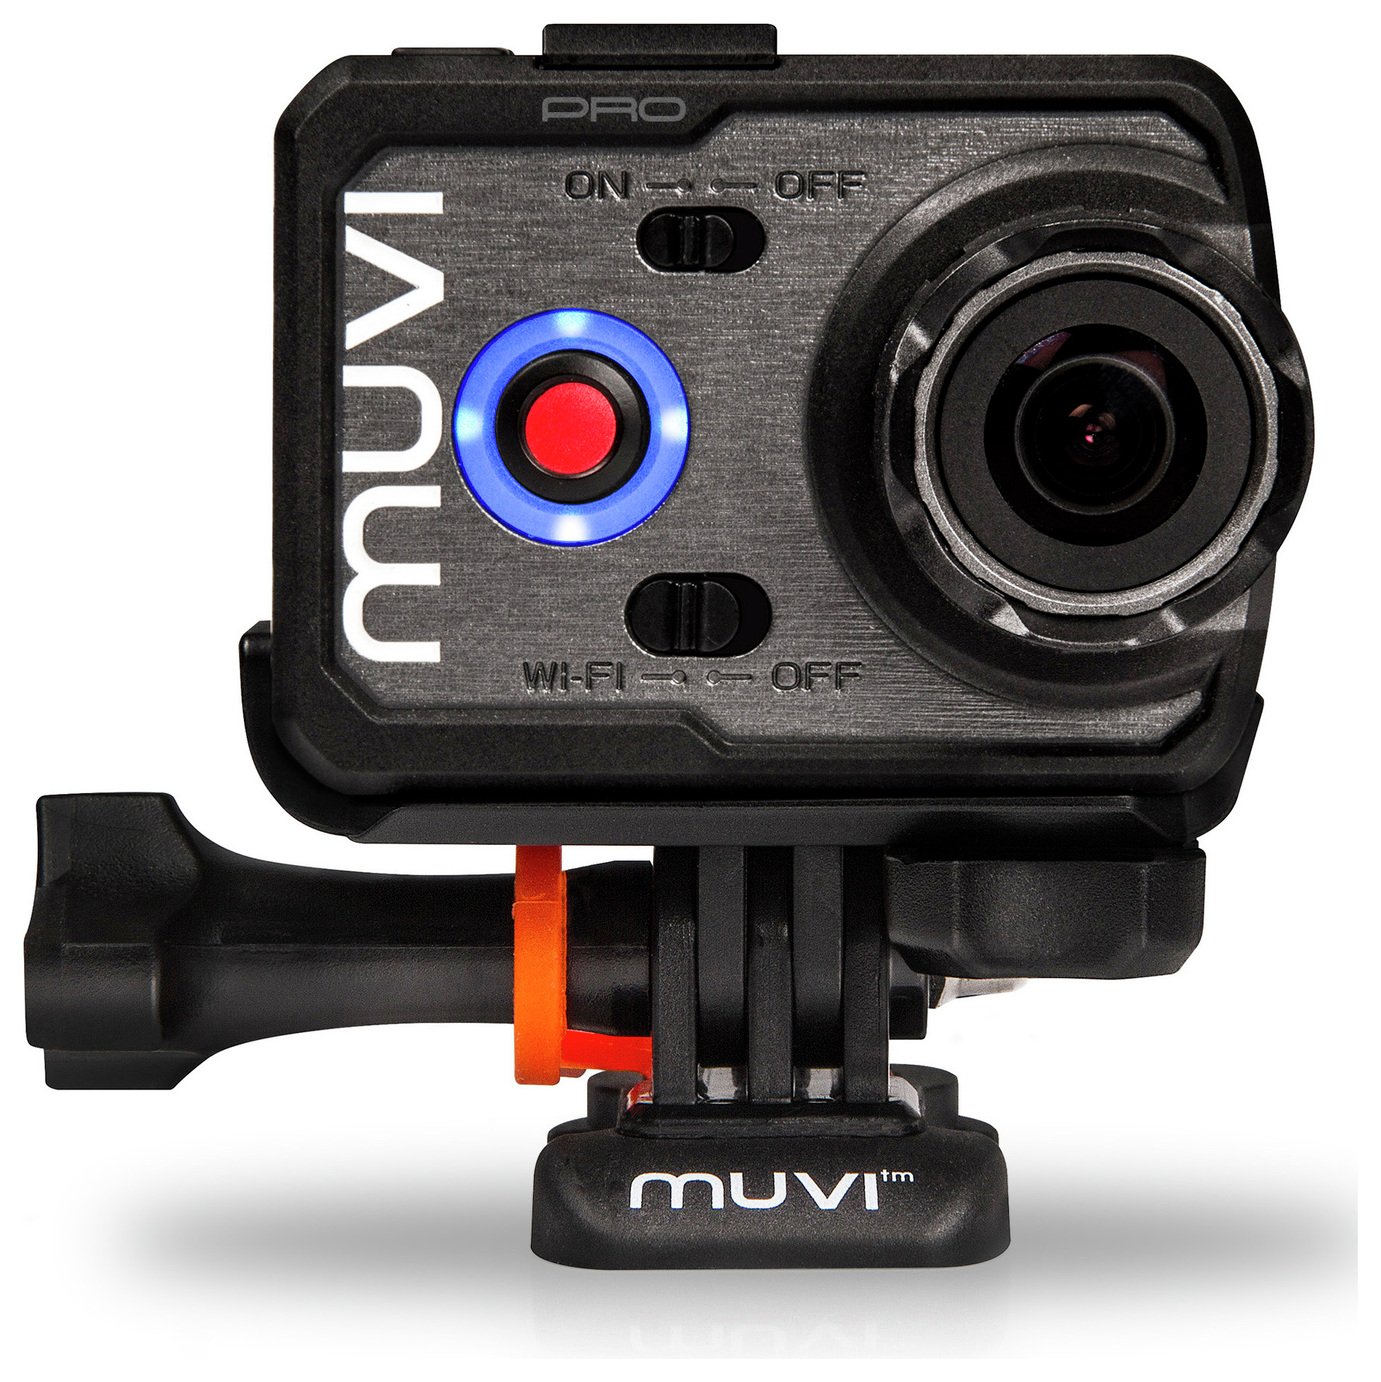 Veho Muvi K-2 Pro 4K Wi-Fi Action Camera review